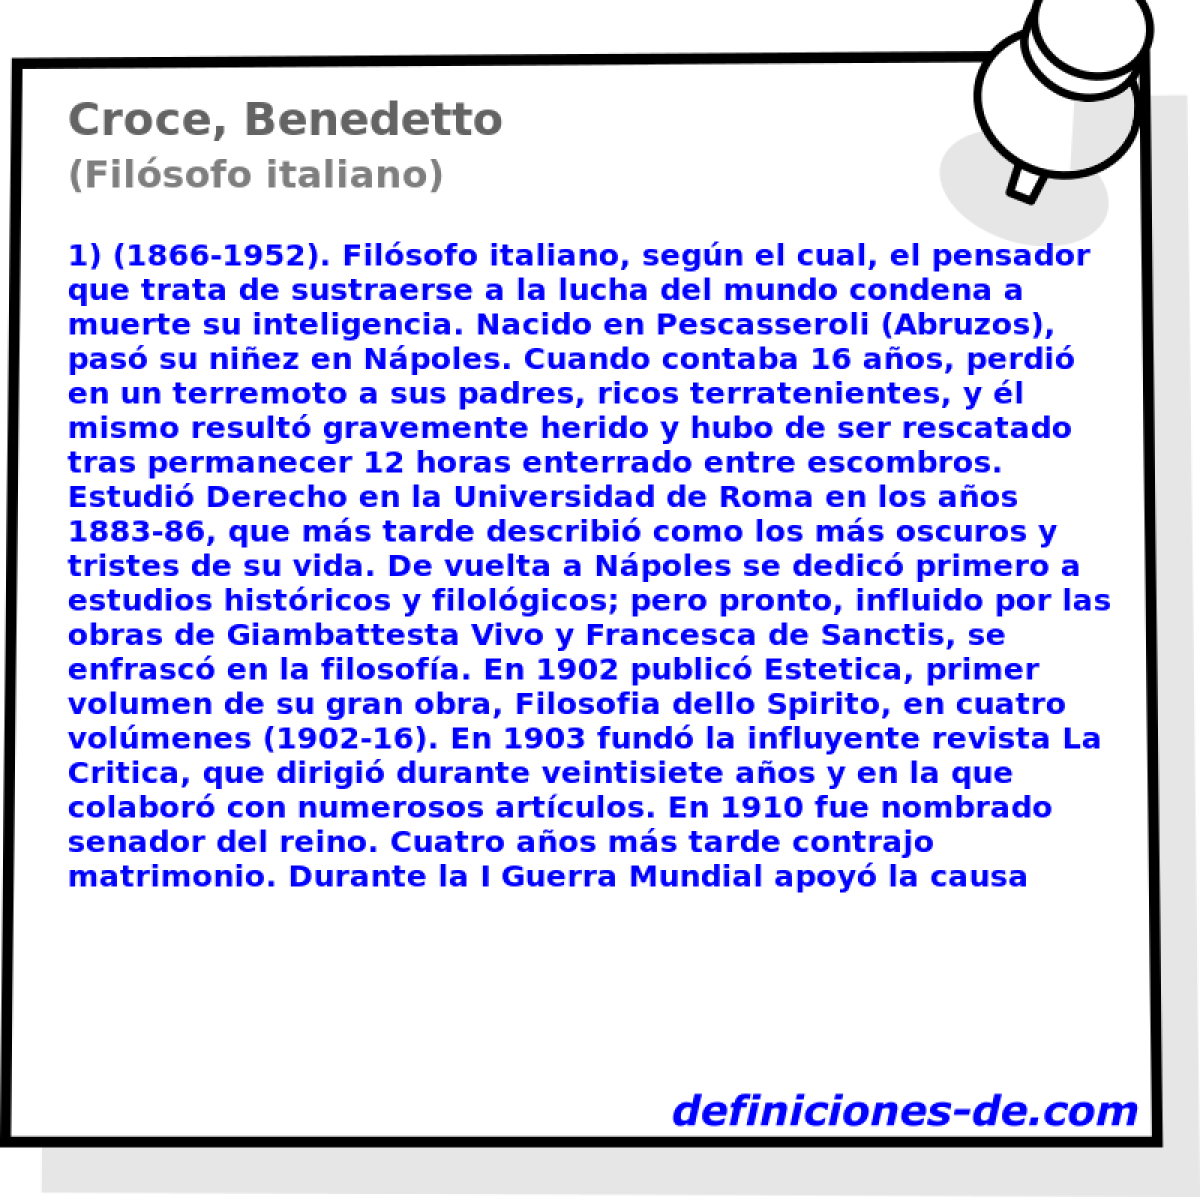 Croce, Benedetto (Filsofo italiano)